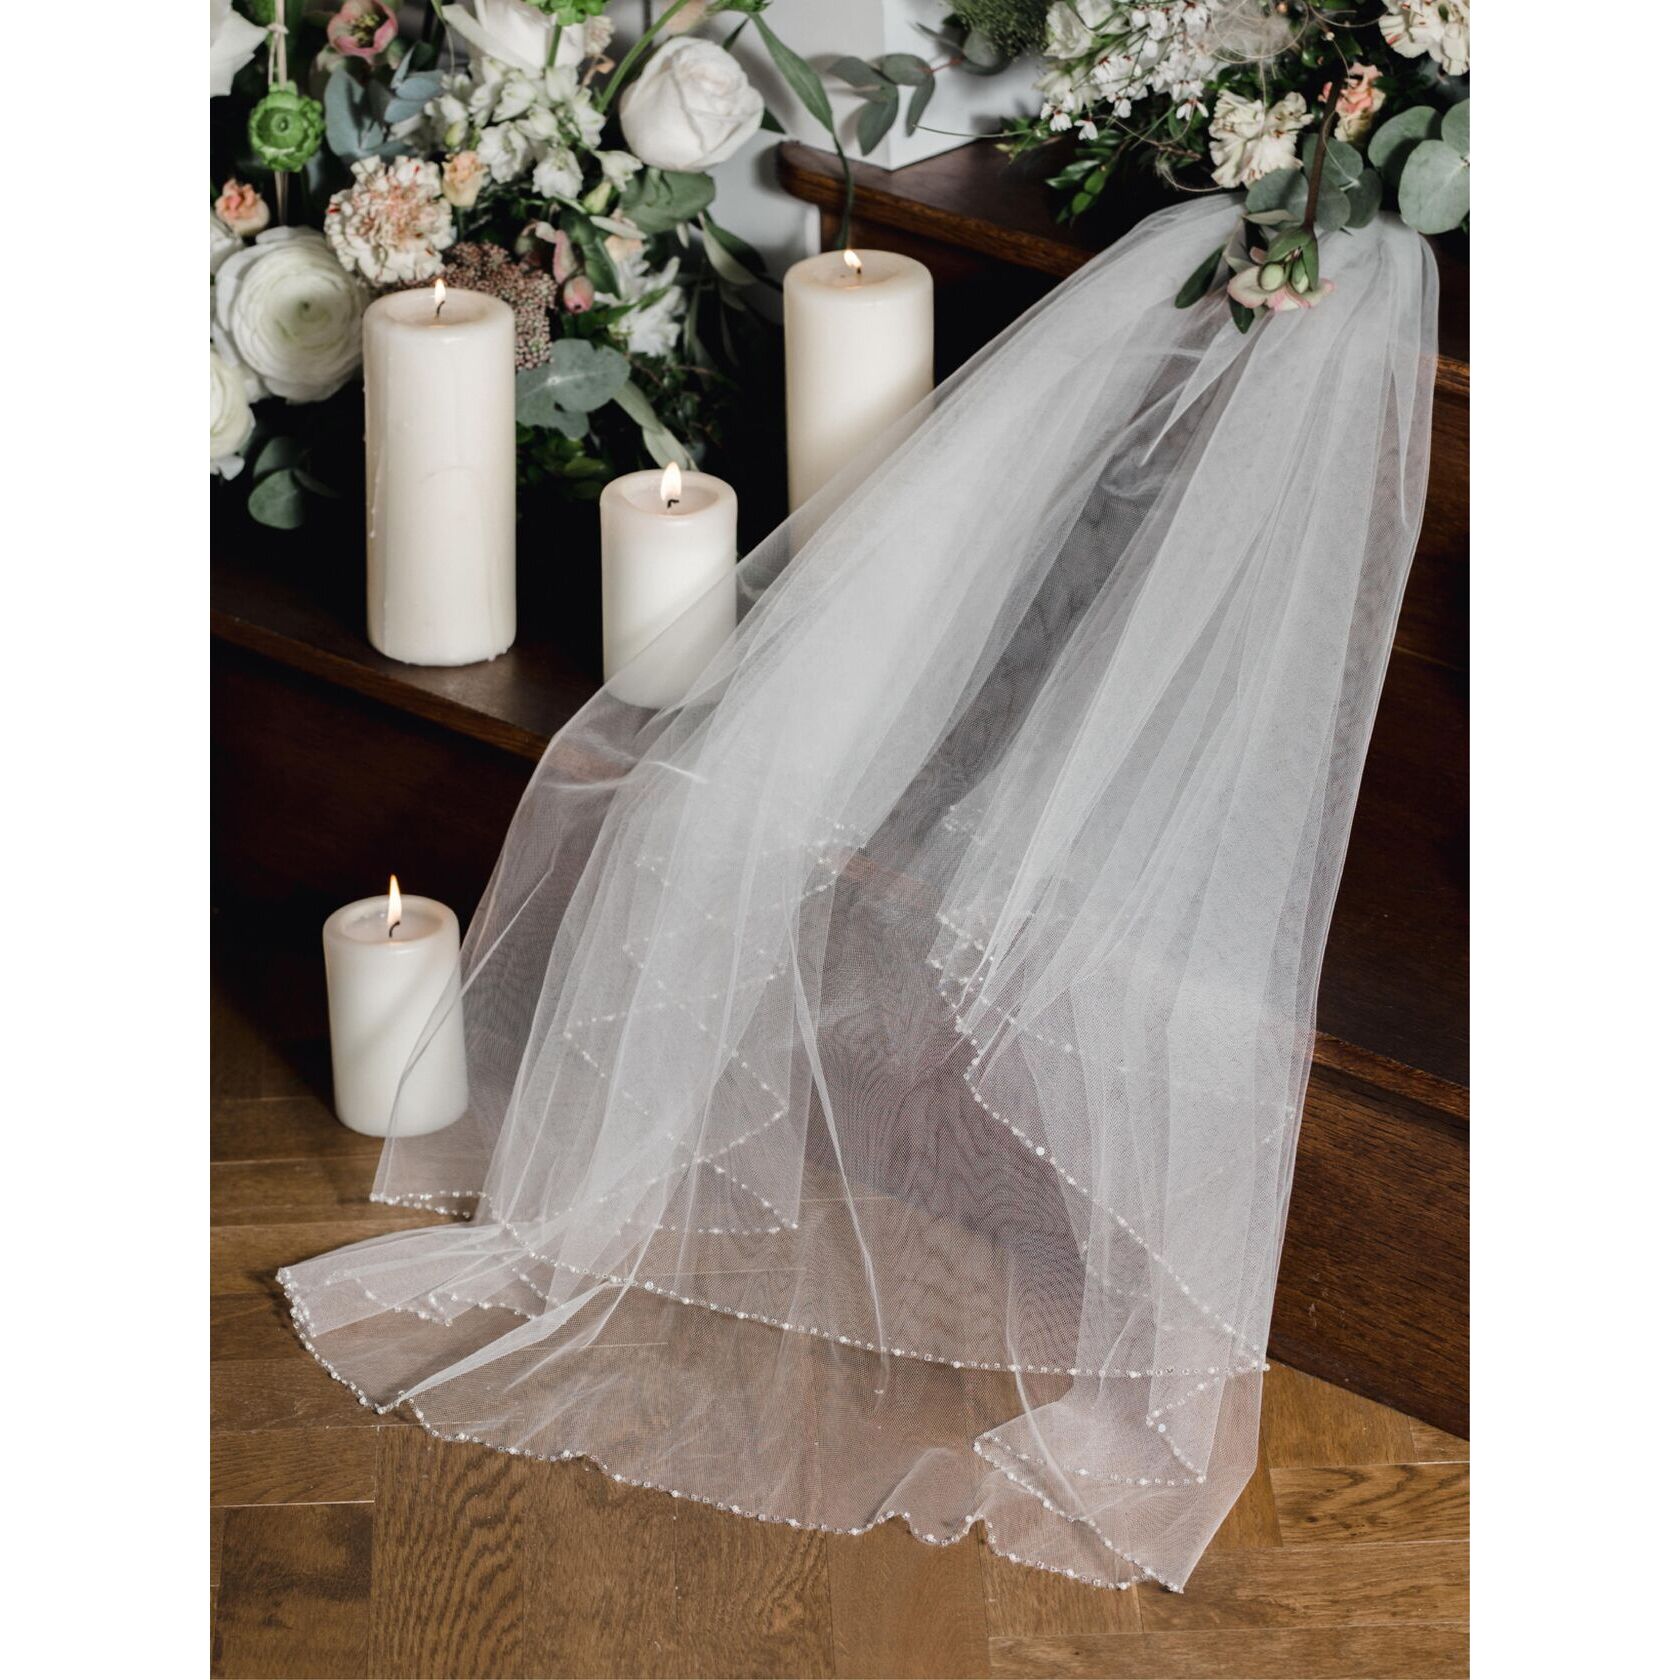 https://www.linzijay.com/images/pictures/2021-bridal-veils/la929-(840x840-ffffff).jpg?v=27f03e9c